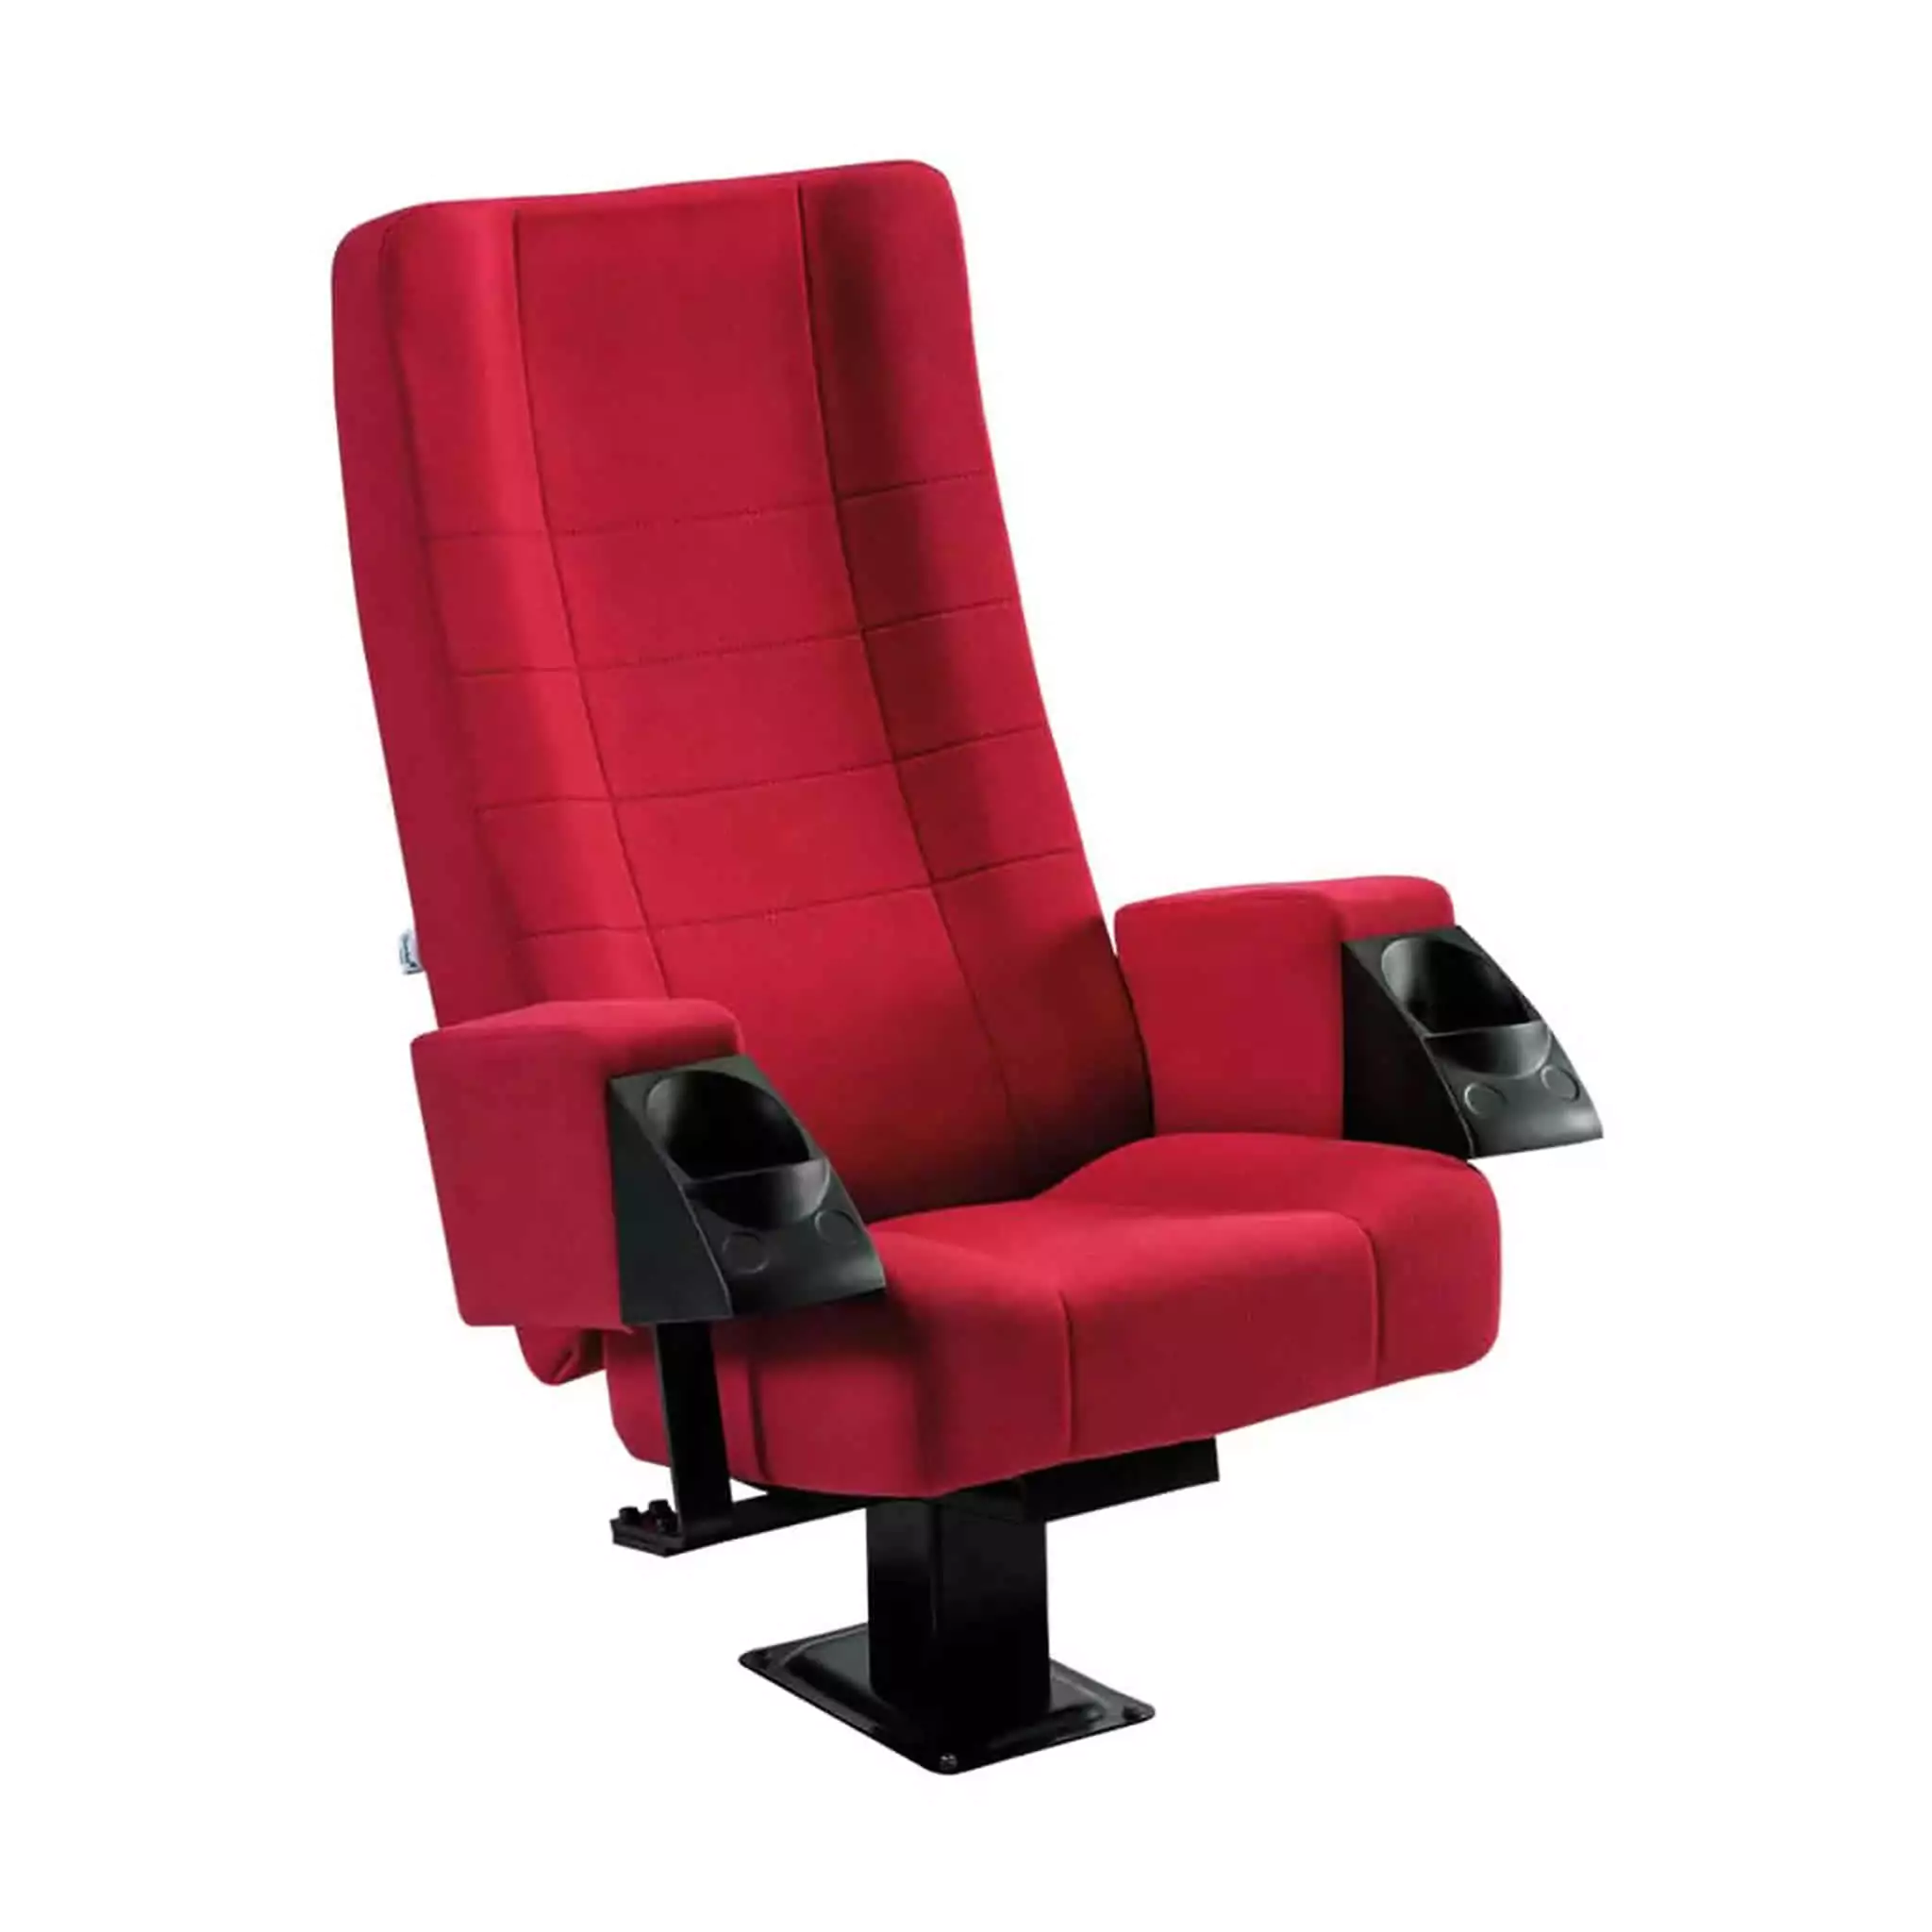 Seat Model: JADE XL / TWIN Image